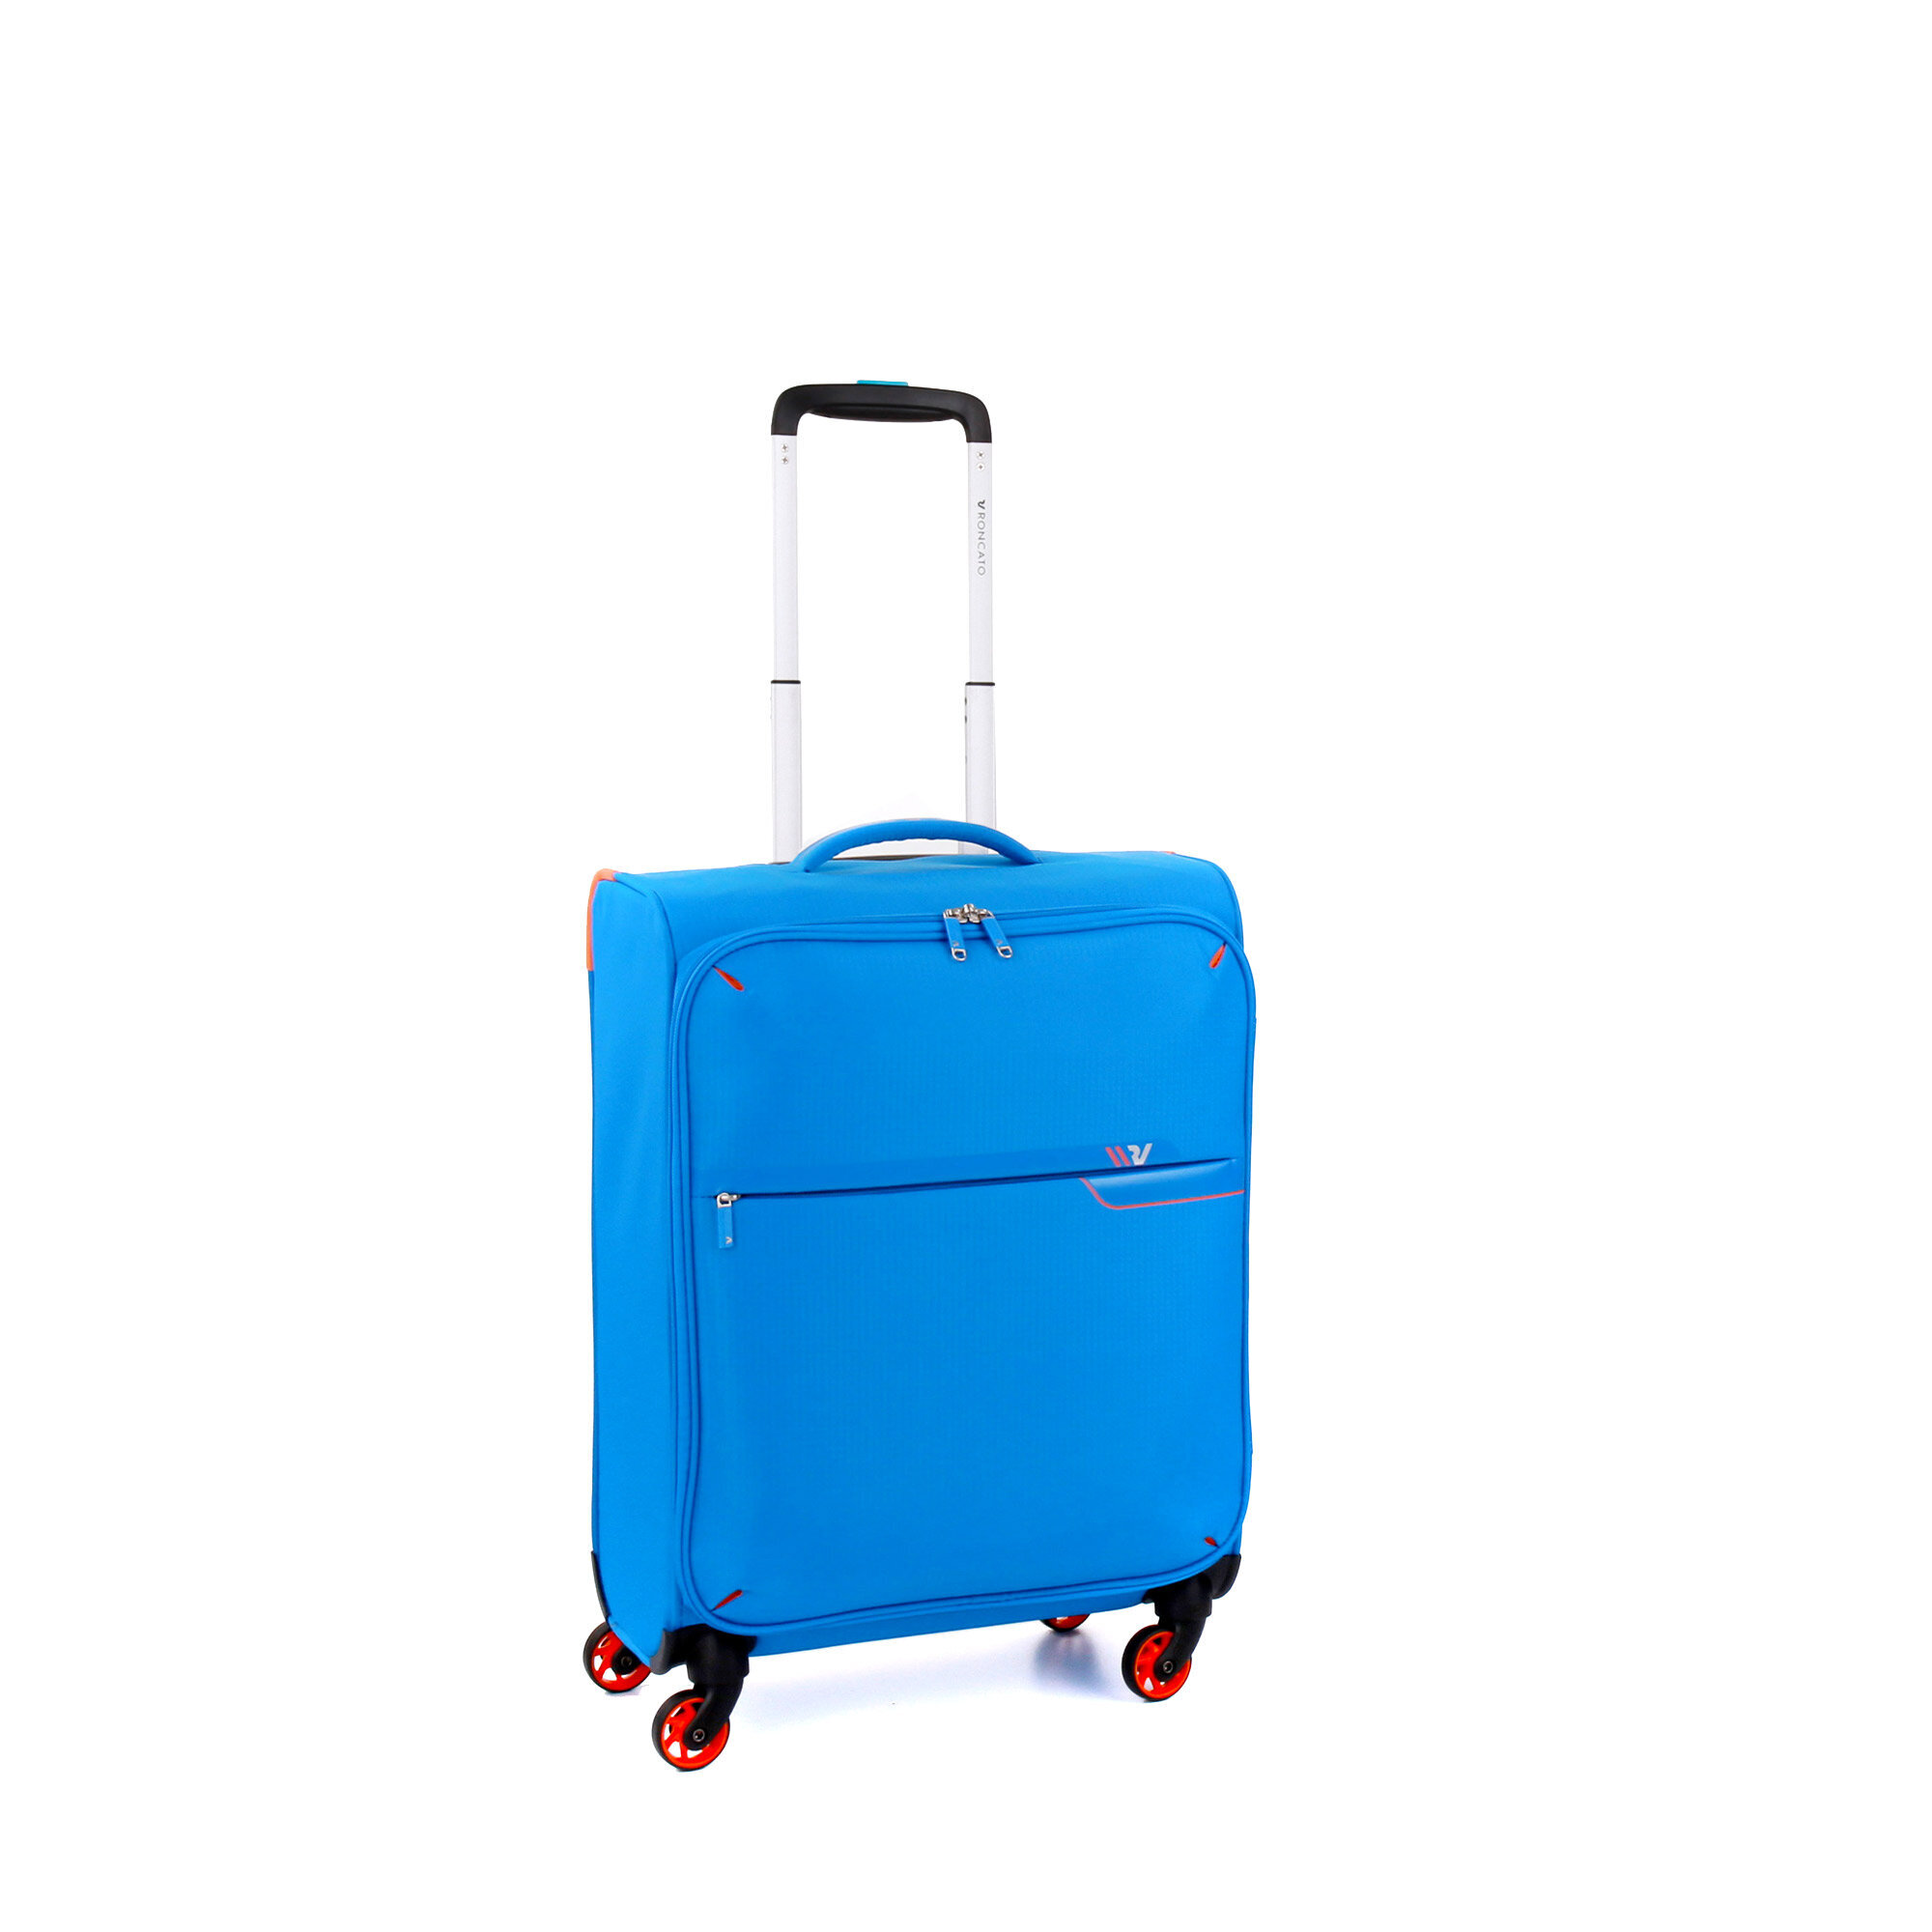 Lagaminas-rankinis bagažas-lengvas-1,5 kg mėlynas kaina | pigu.lt